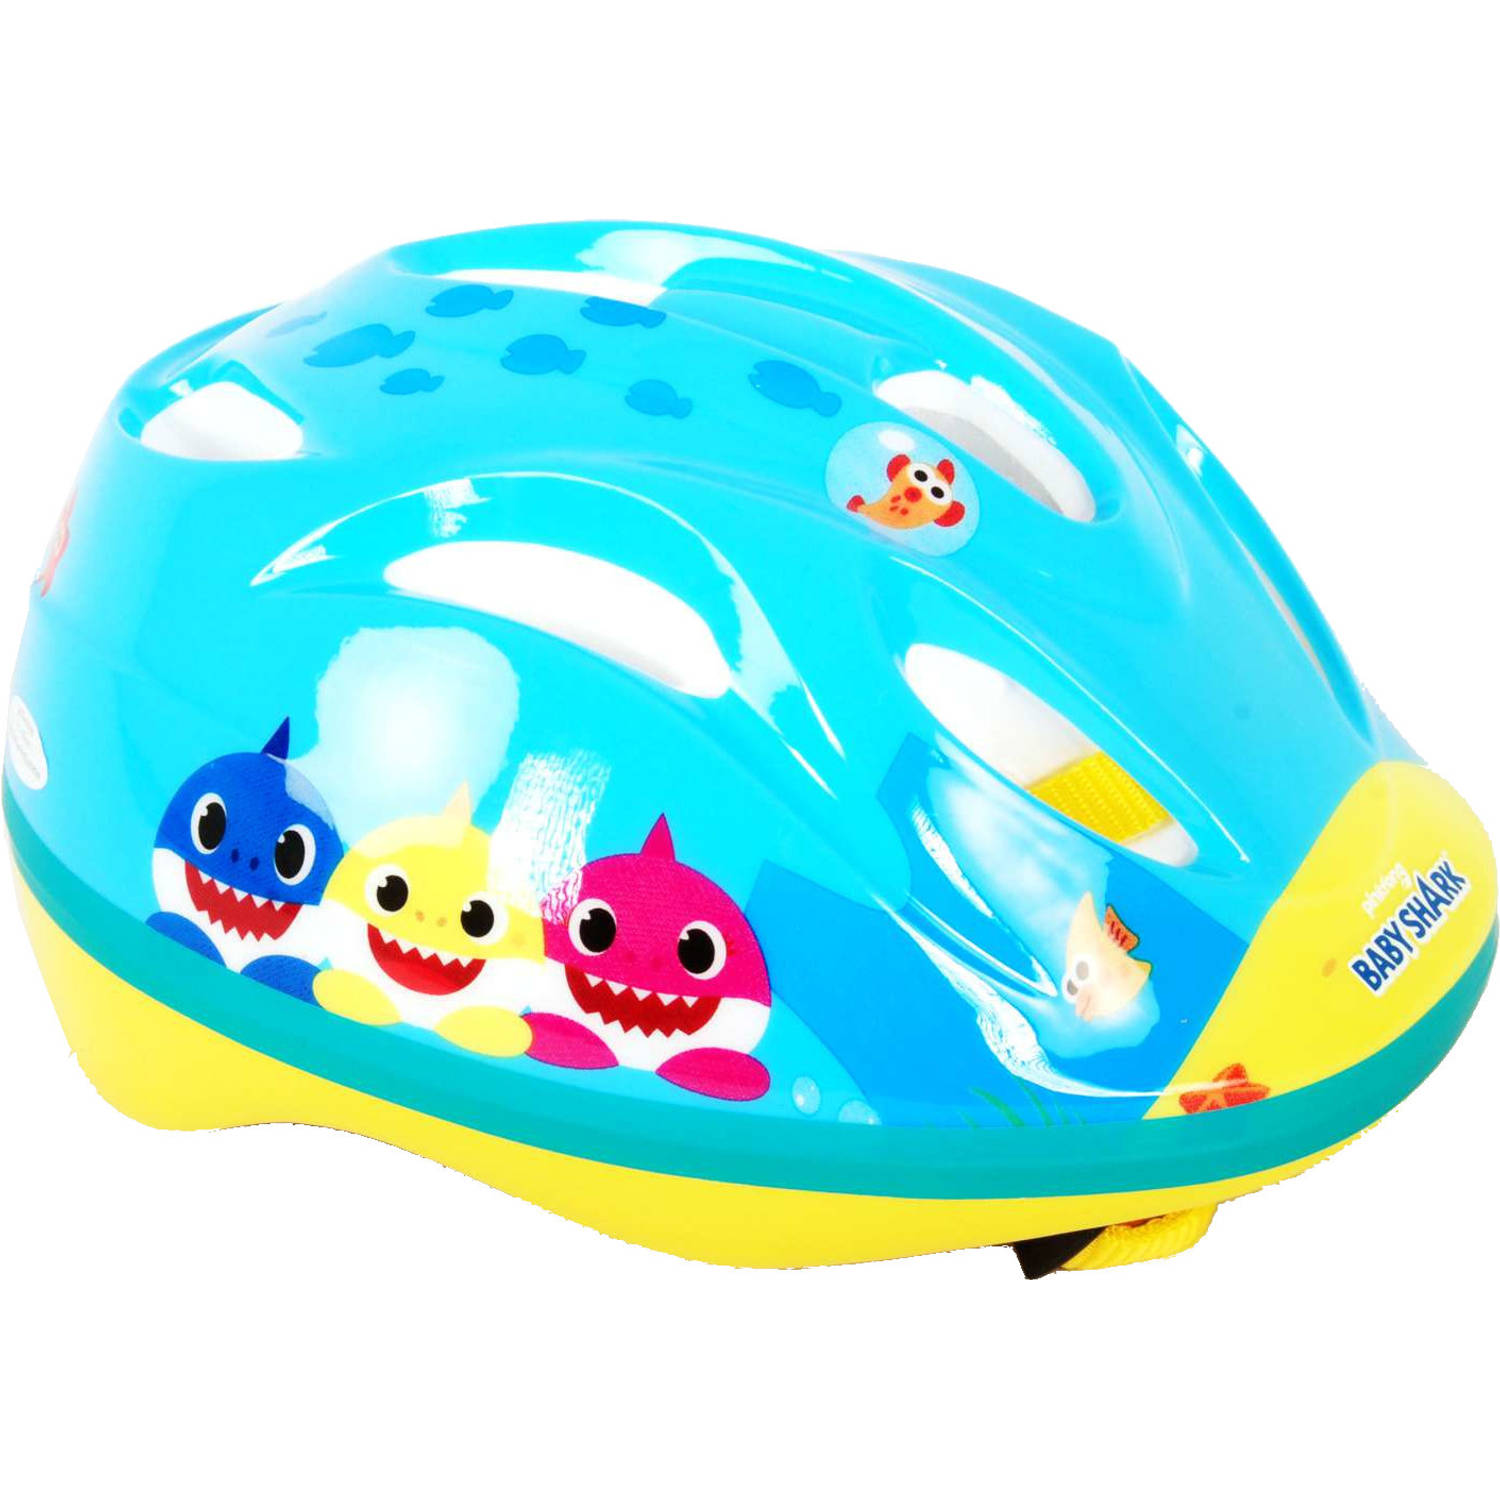 Pinkfong fietshelm Baby Shark piepschuim blauw/geel mt 51-55 cm